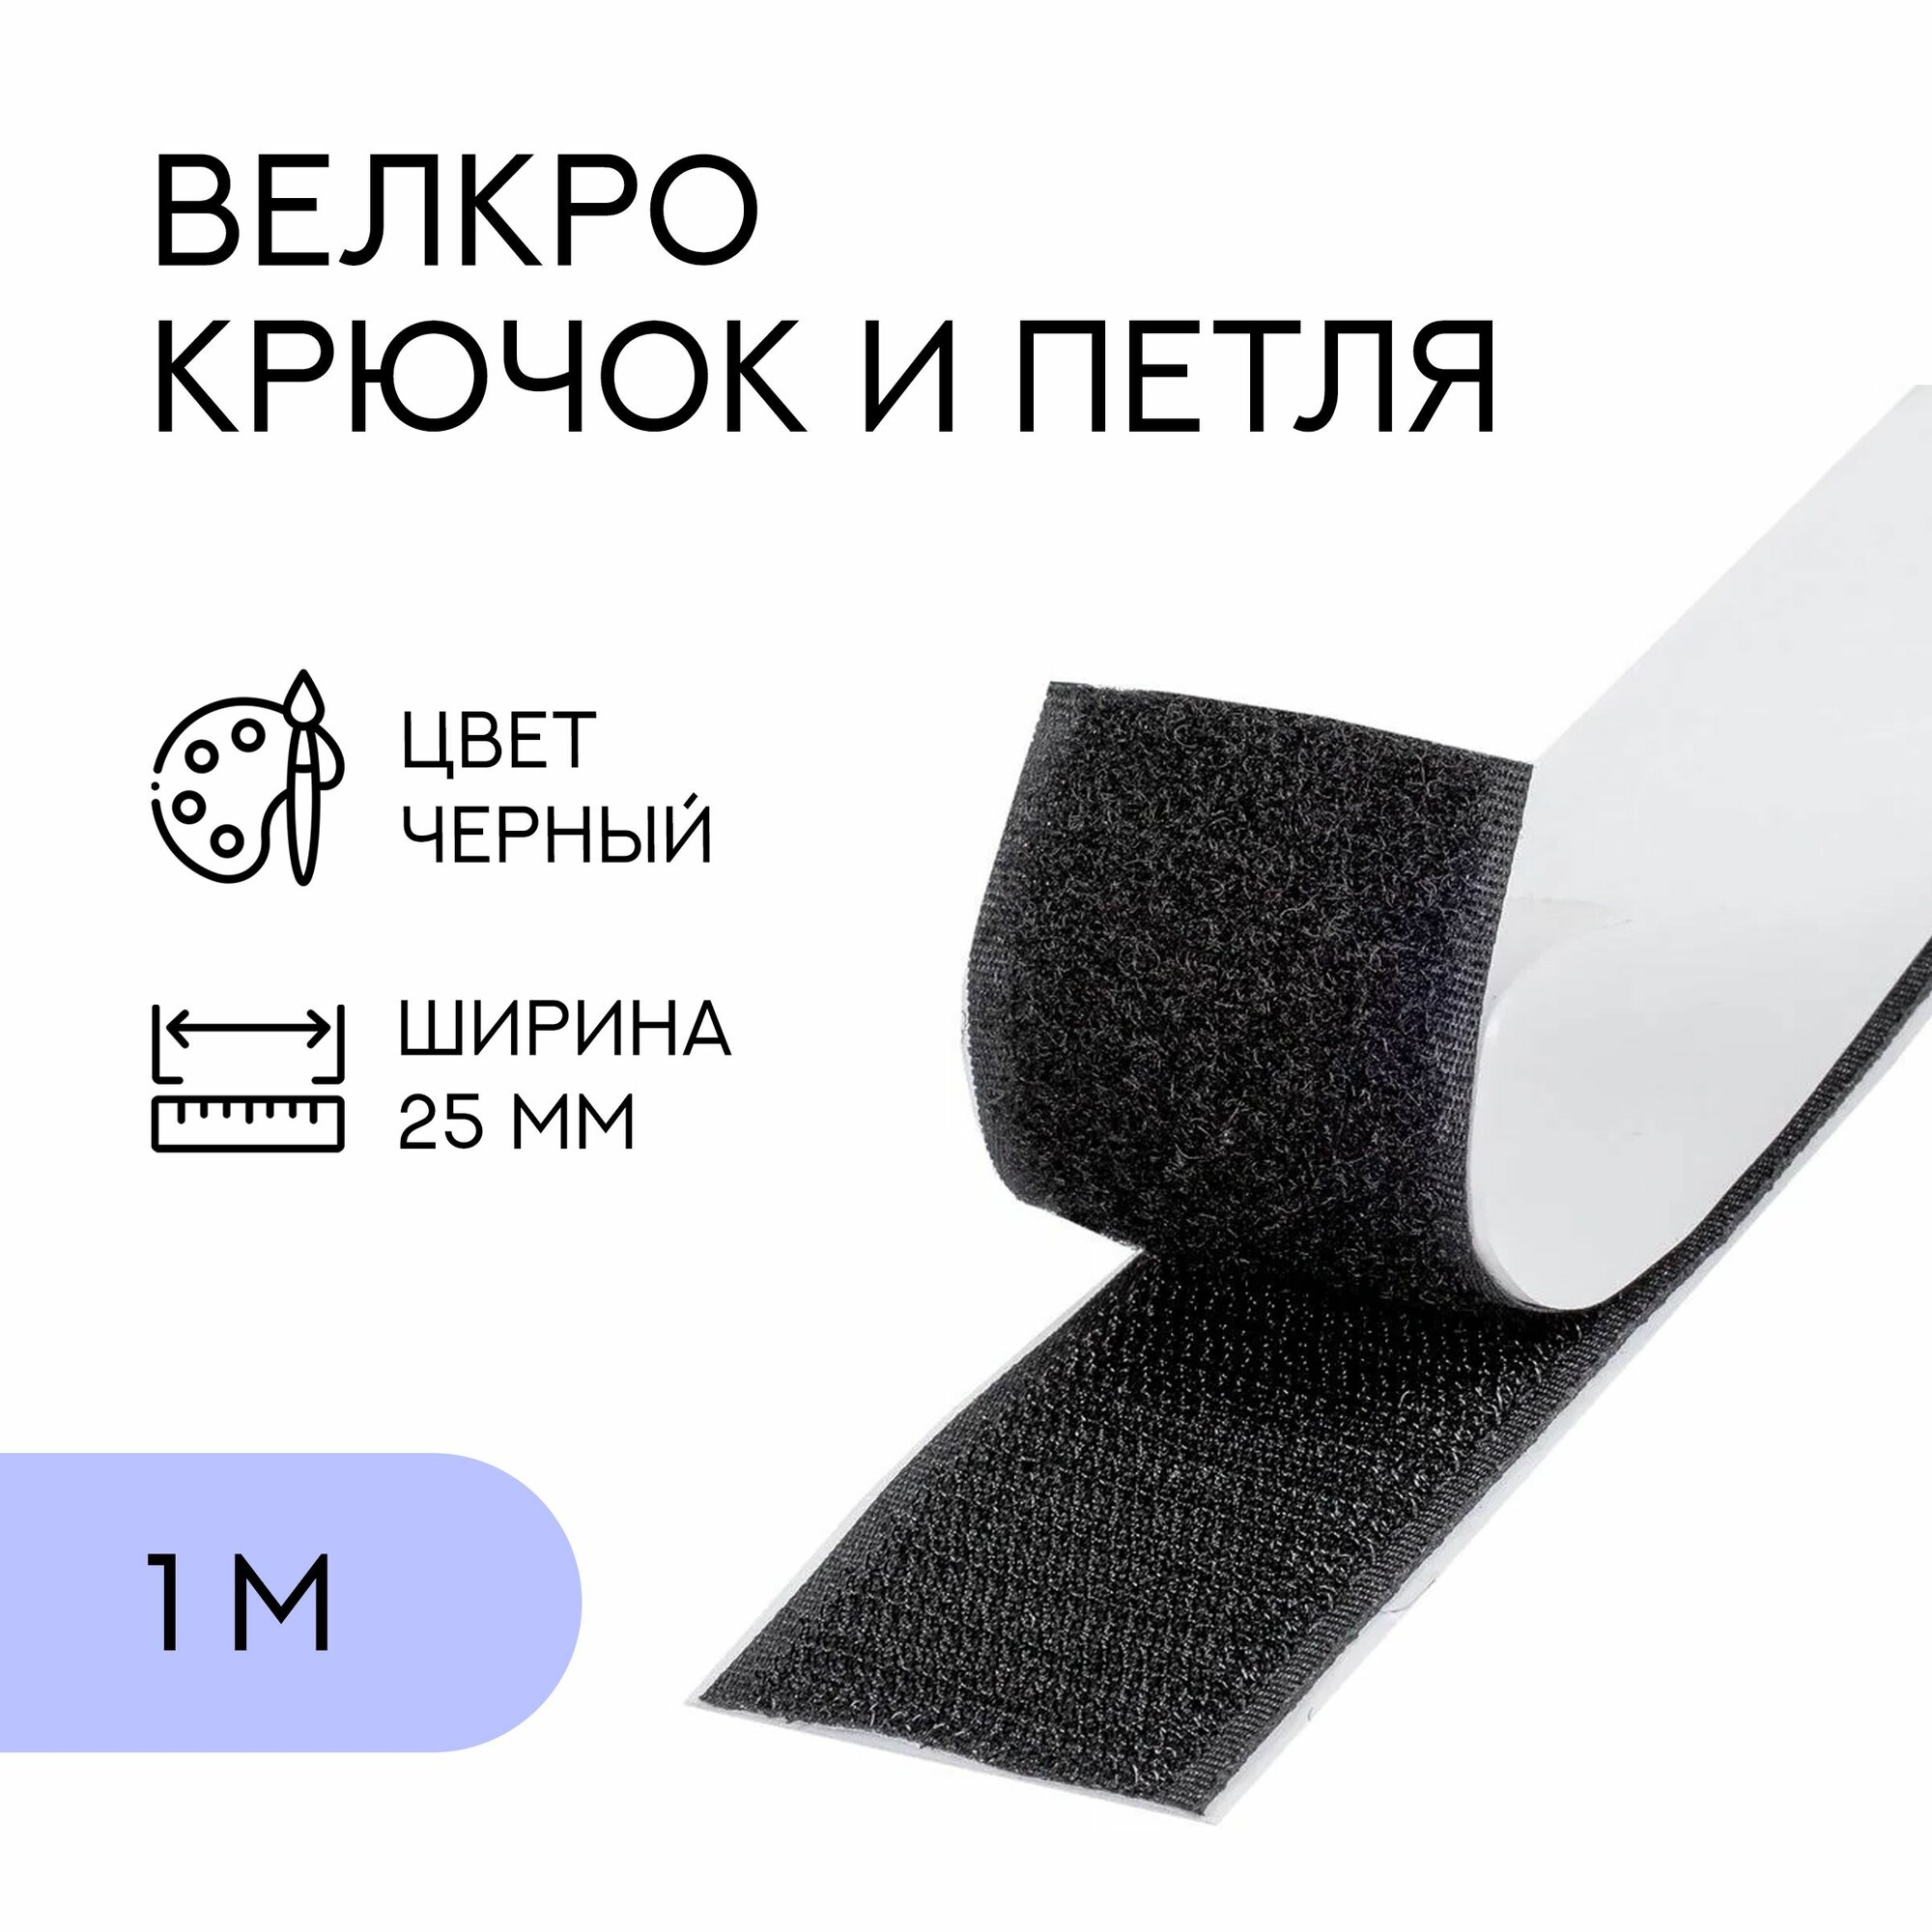 Велкро комплект (петля и крючок) с липким слоем / лента контактная липучка 25 мм черный 1 м